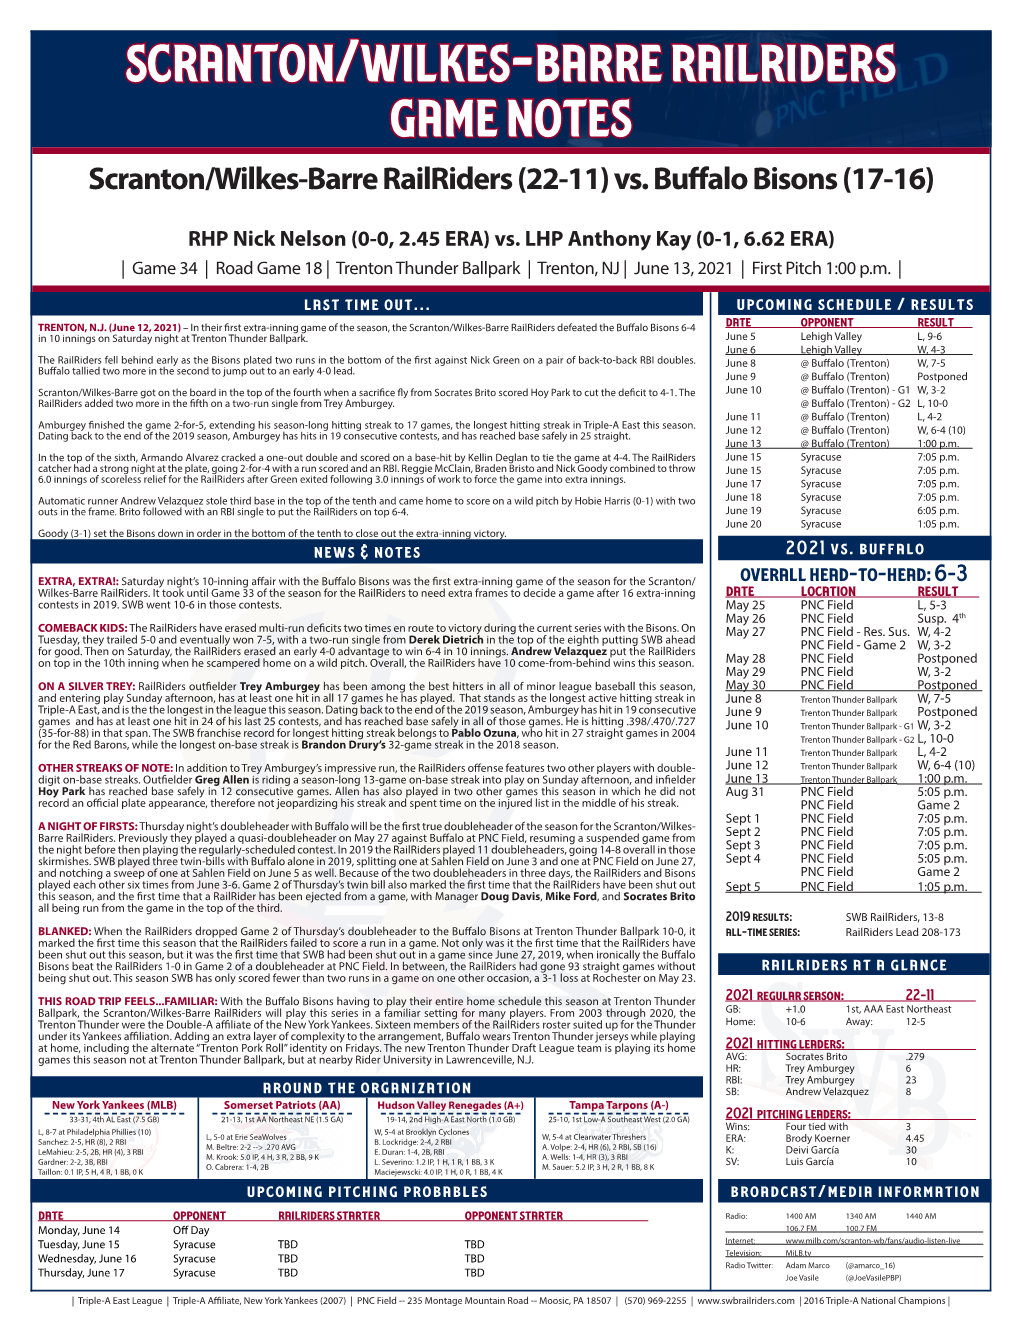 Scranton/Wilkes-Barre Railriders Game Notes Scranton/Wilkes-Barre Railriders (22-11) Vs